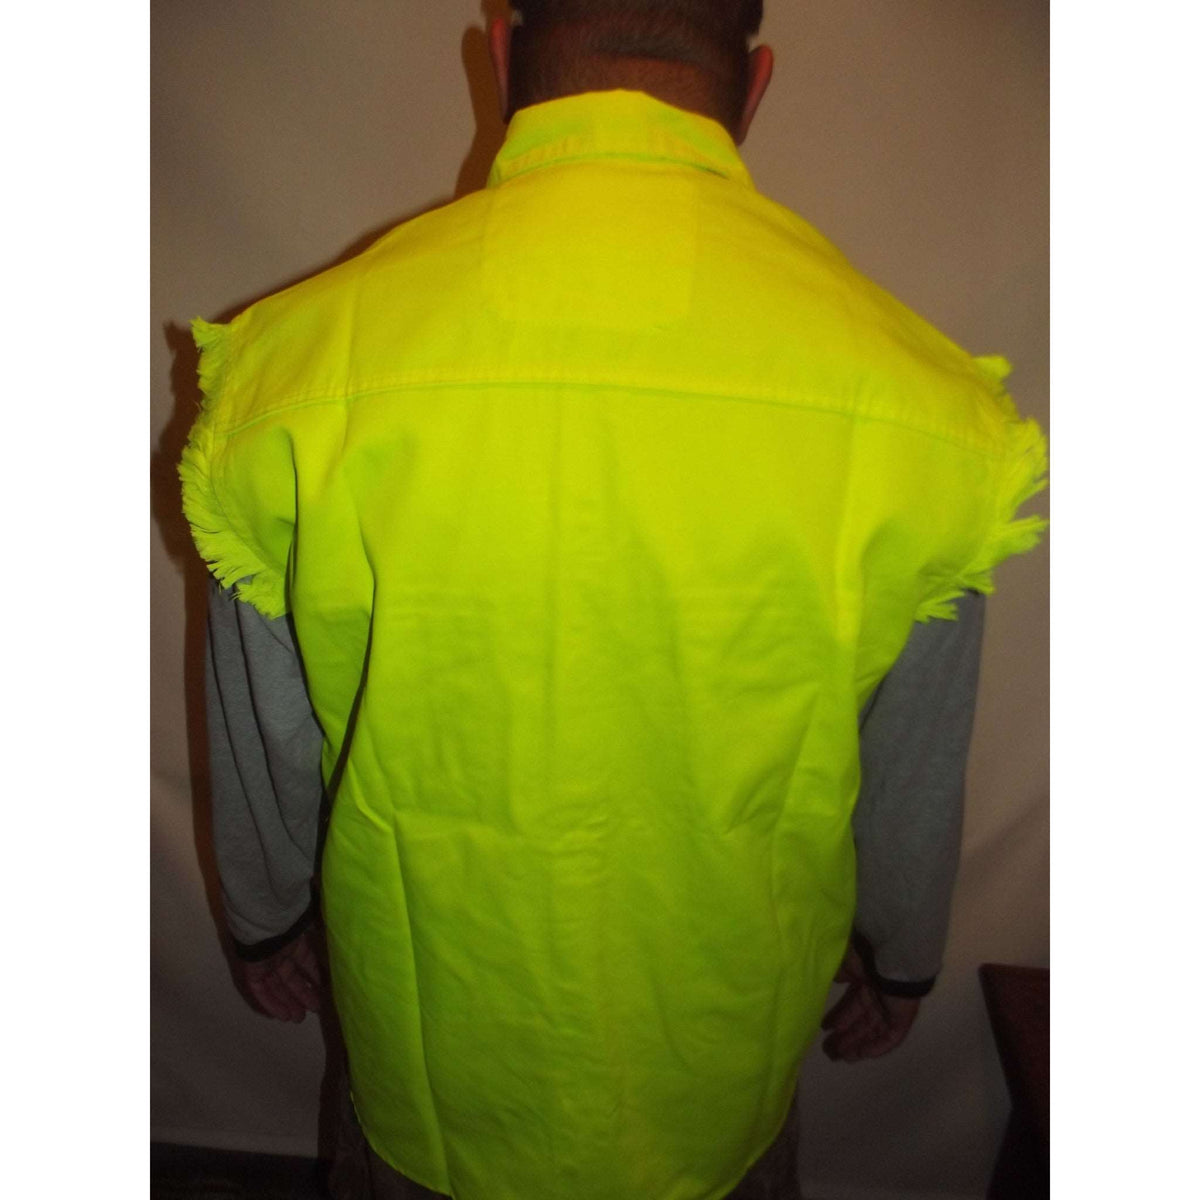 Sleveless Denim Mens Shirt Fluorescent back